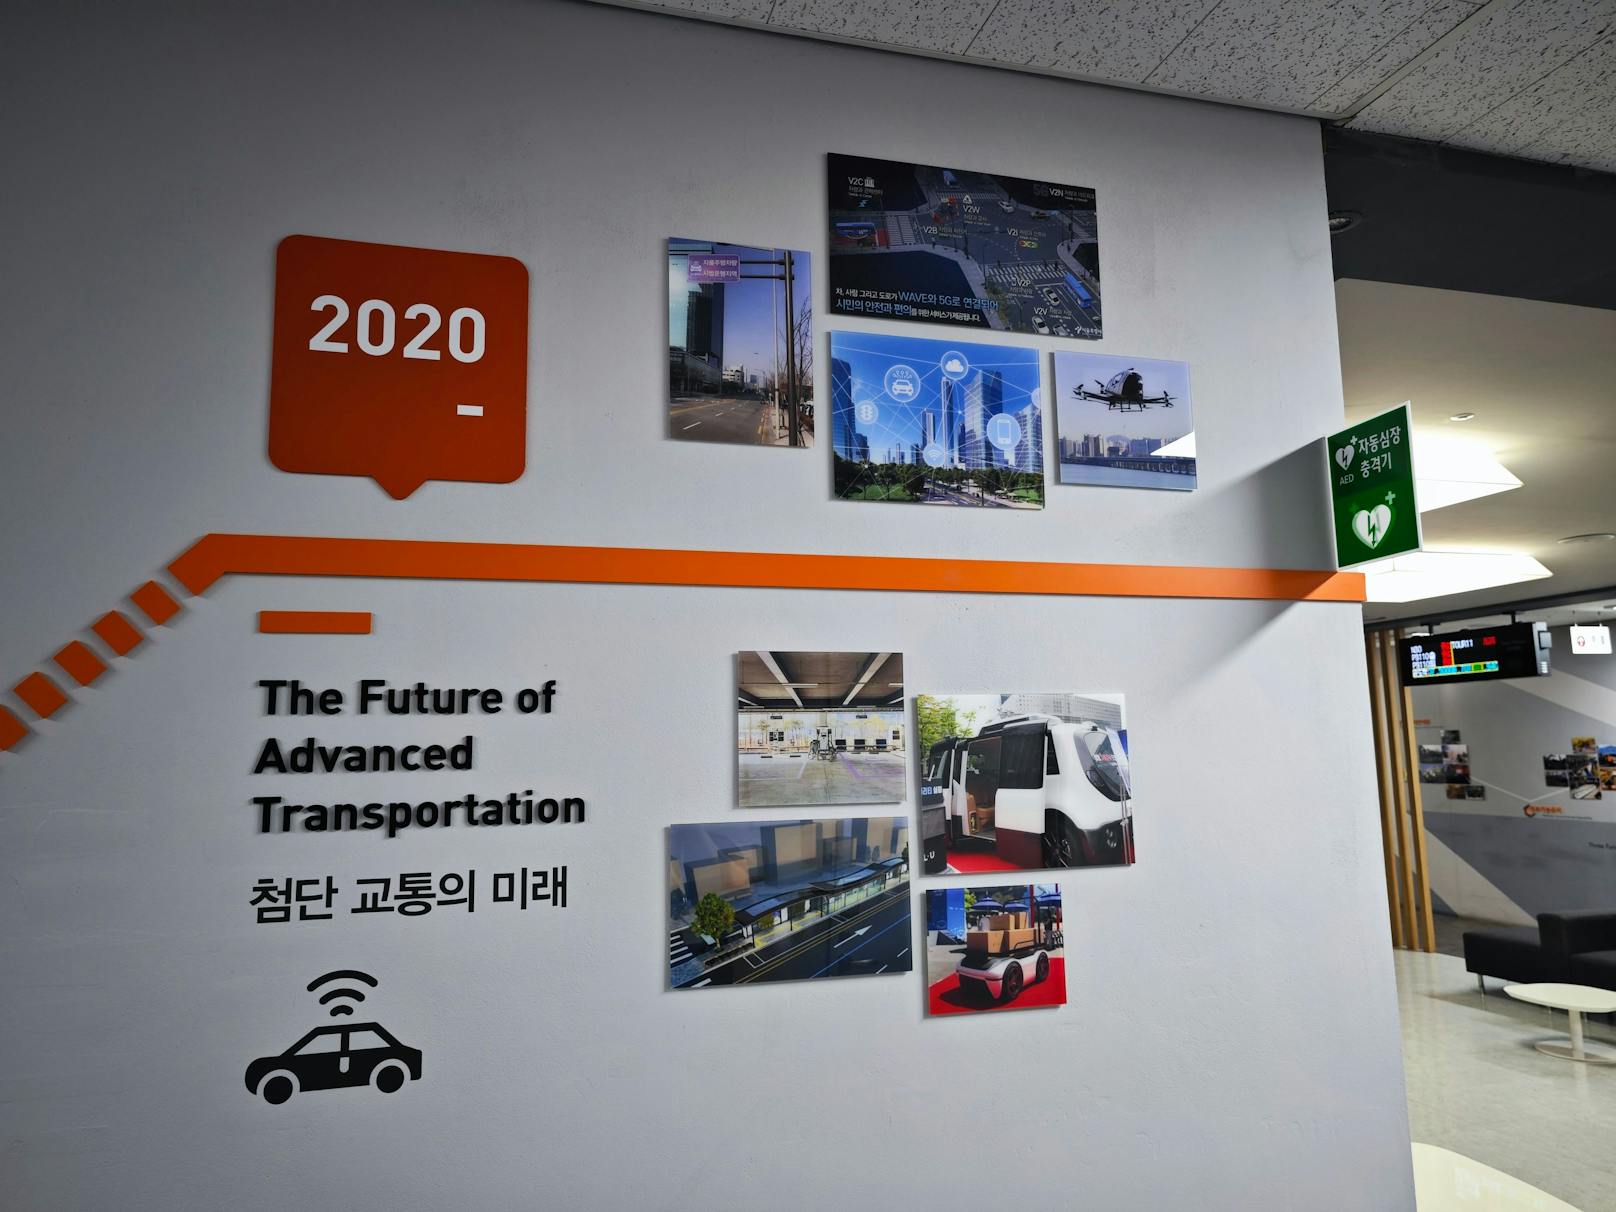 Drohnen, Flugtaxis, autonome Busse – Seoul will zum Vorreiter beim smarten Verkehrsmanagement werden.